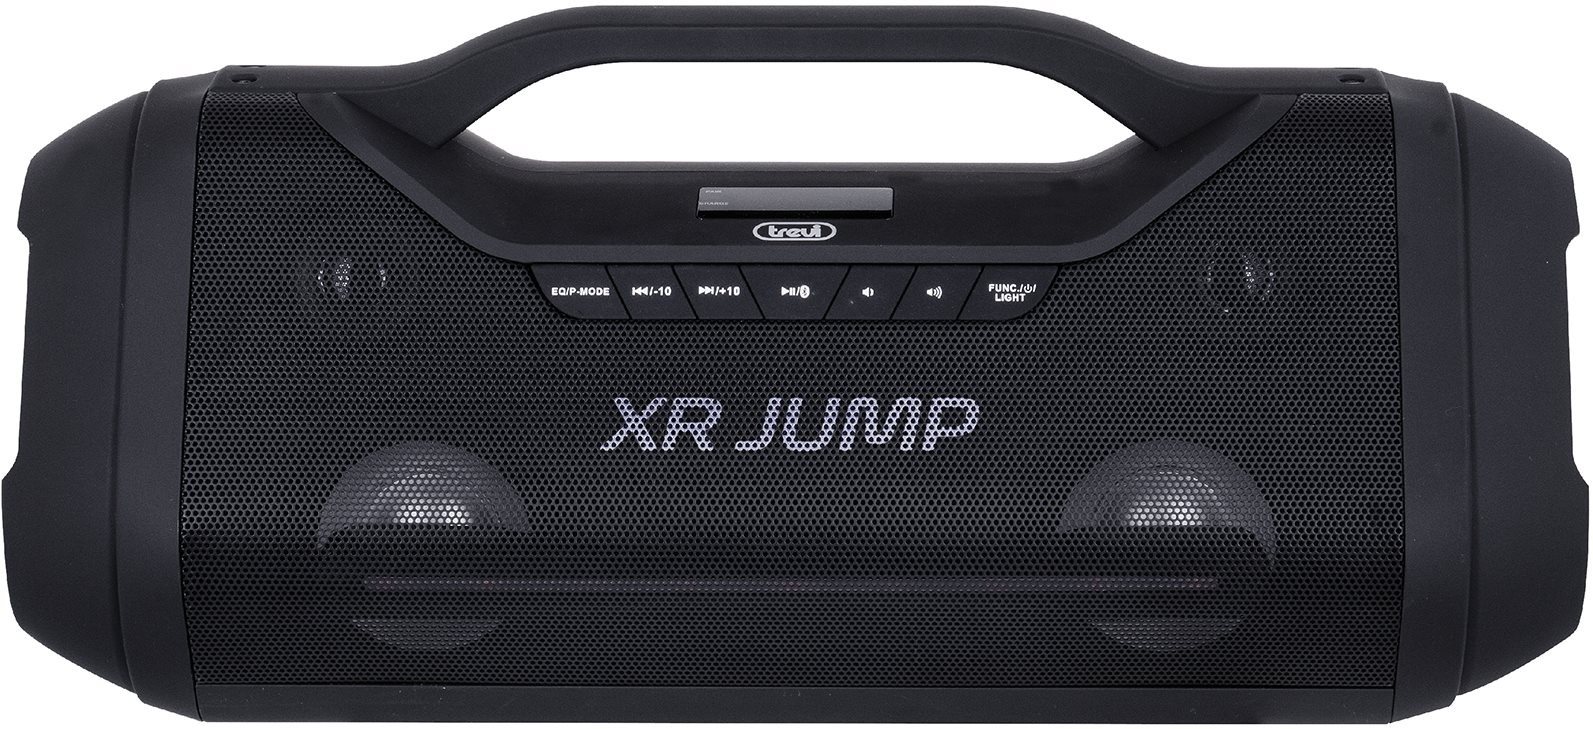 Bluetooth hangszóró Trevi XR 400 Képernyő